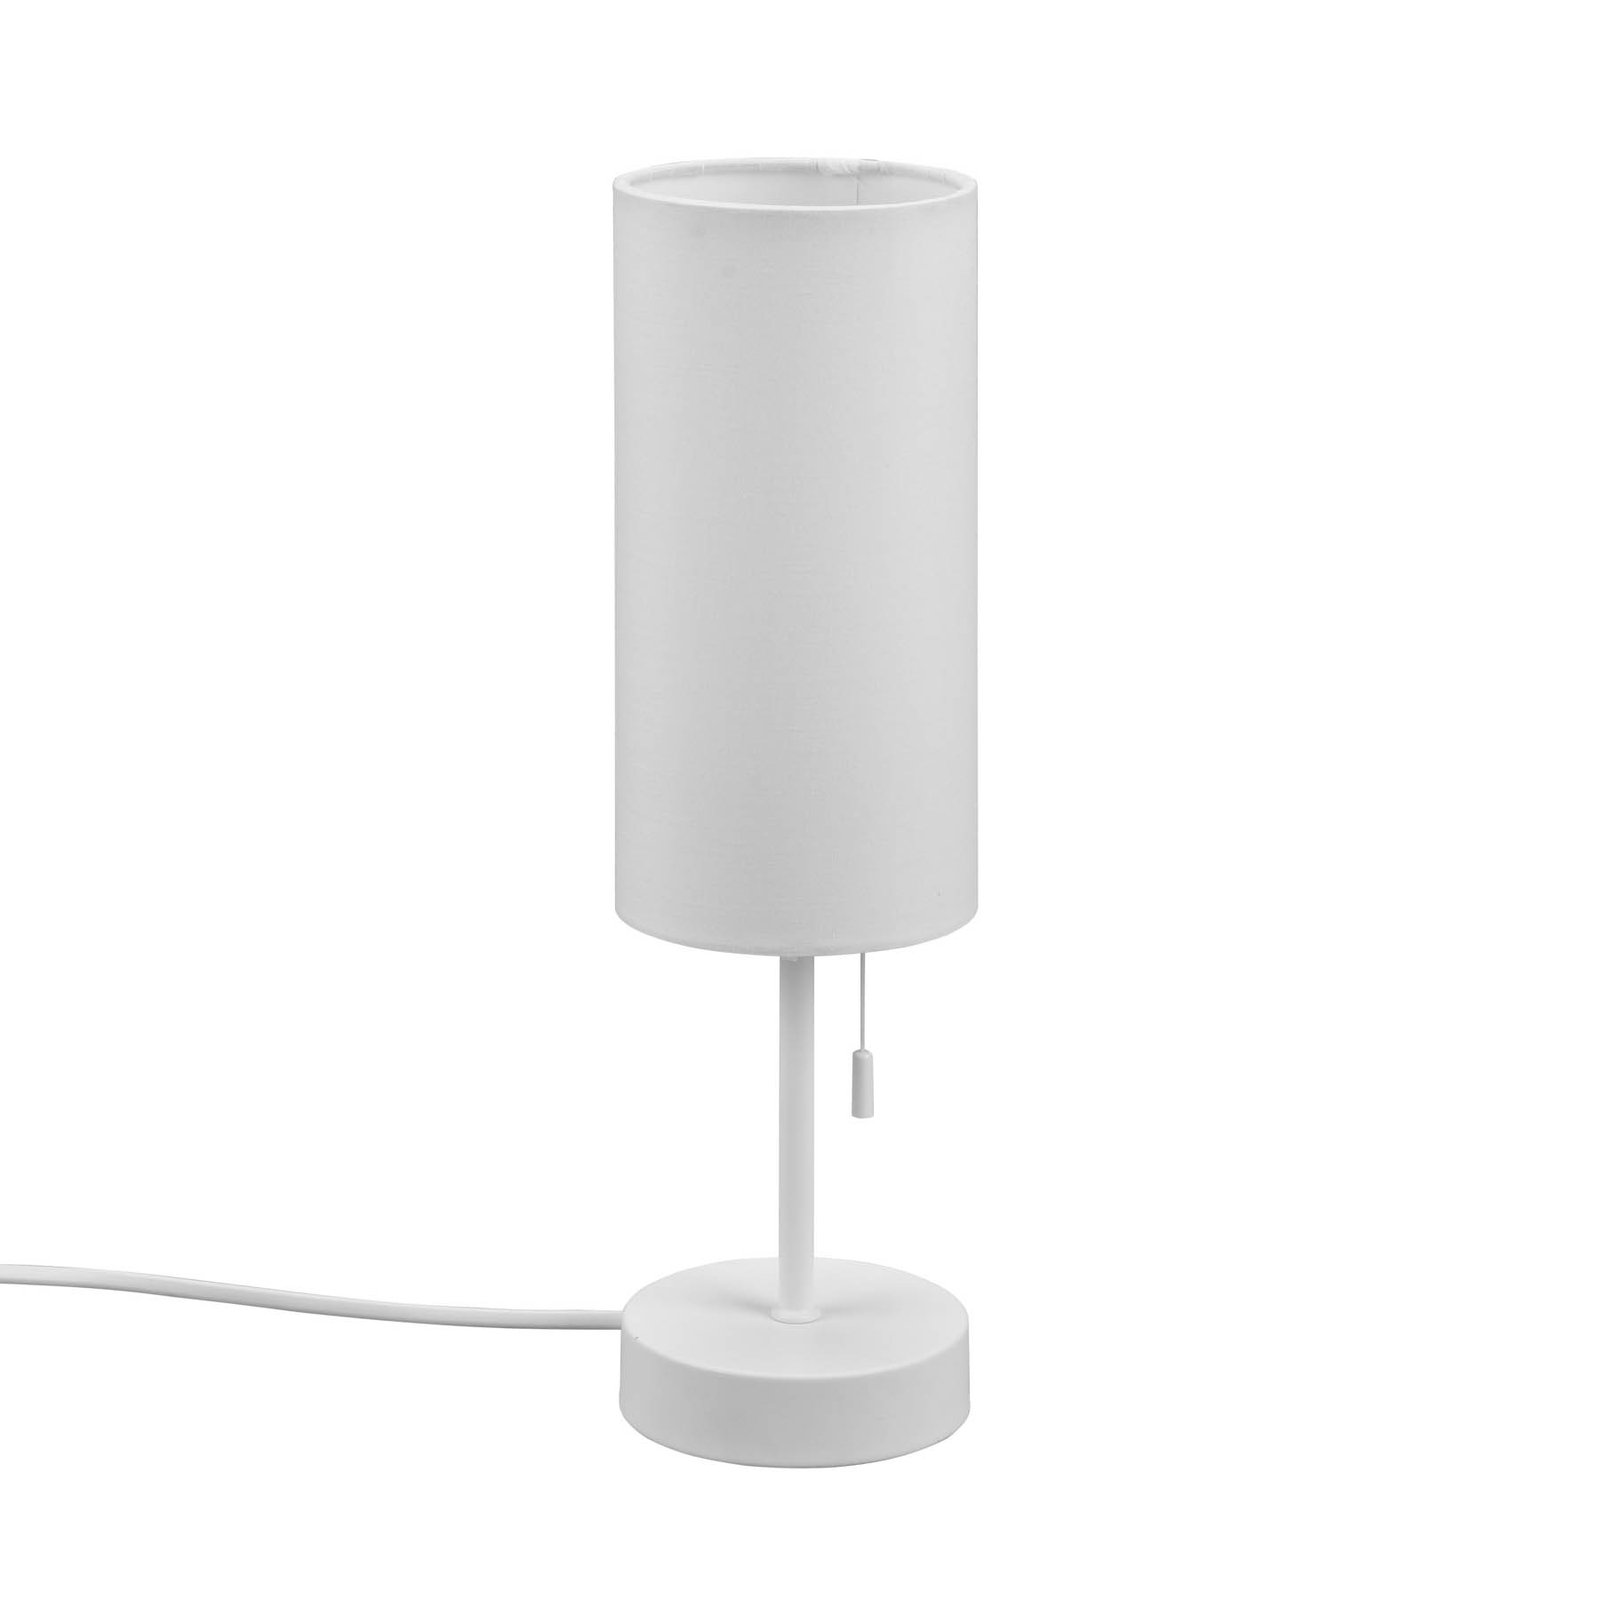 Namizna svetilka Jaro s priključkom USB, bela/bela